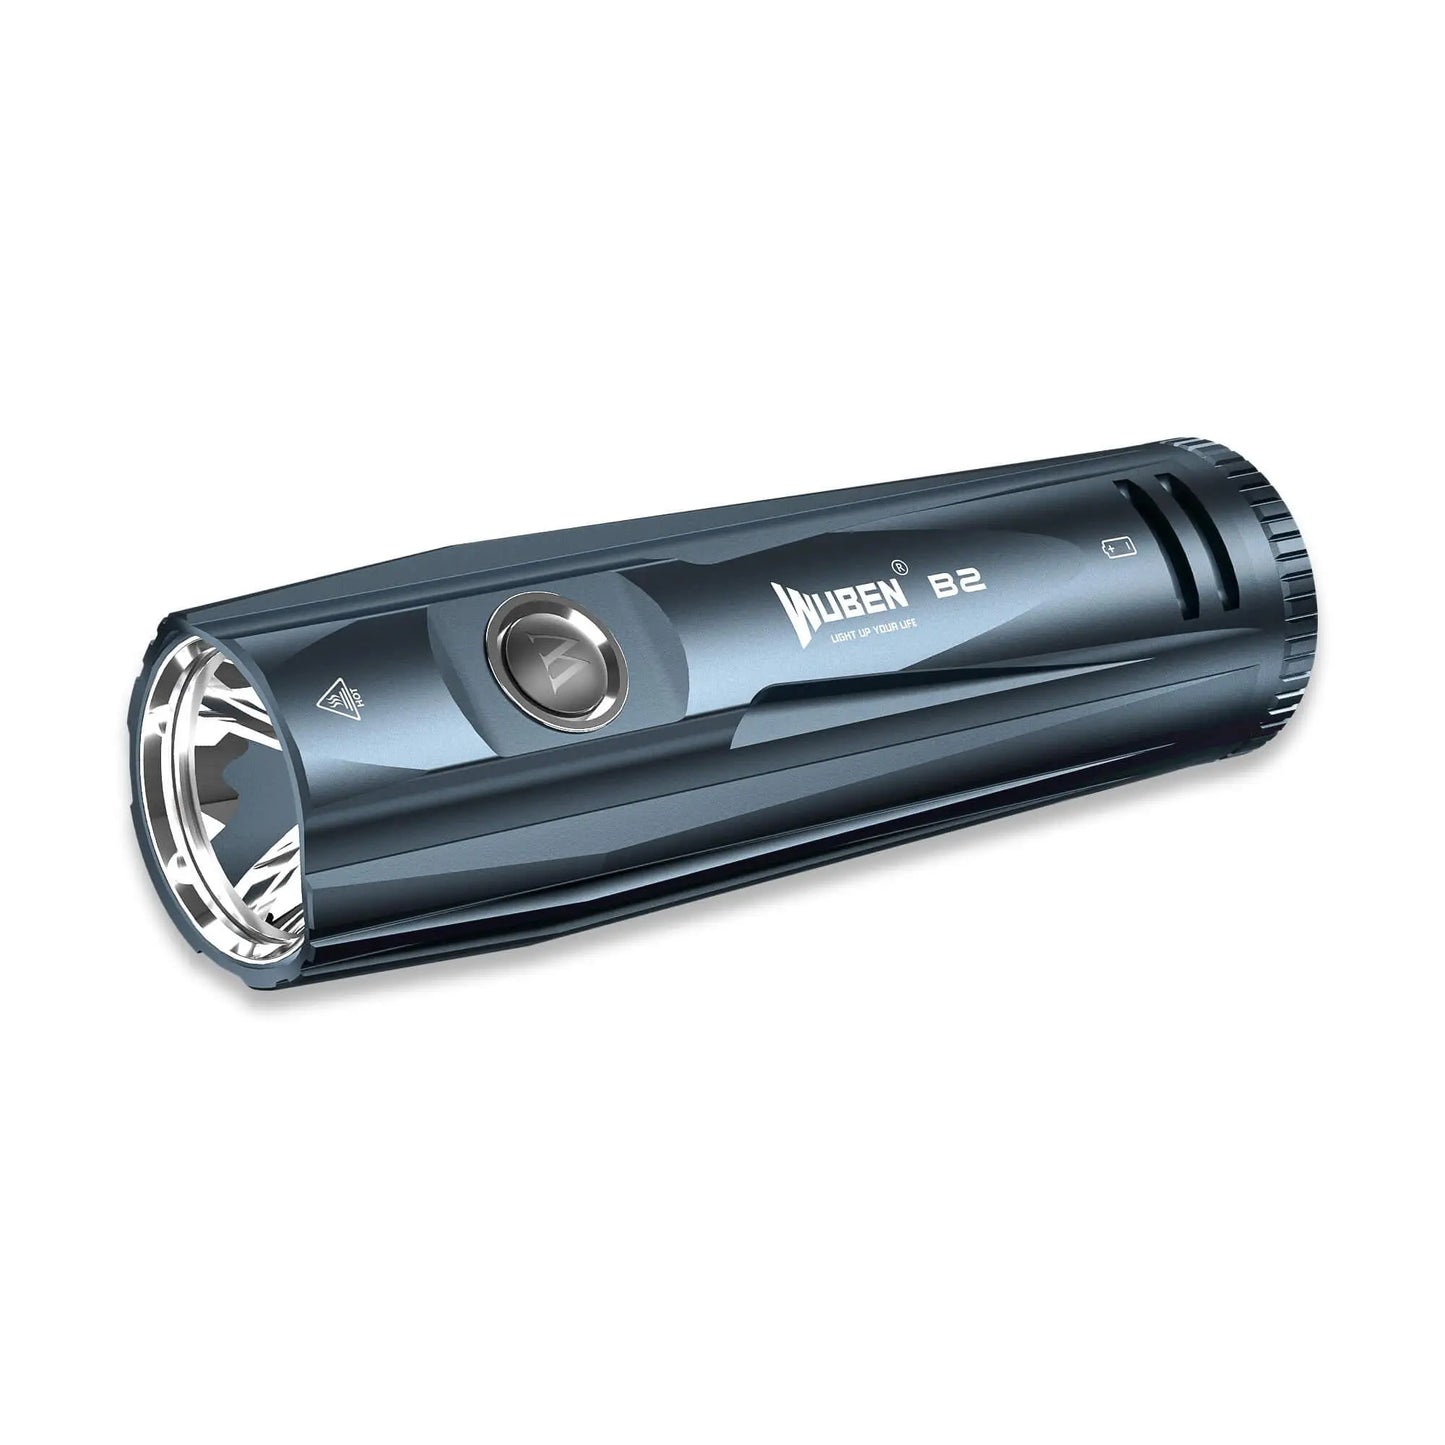 Wuben B2 1300 Lumen USB-C Rechargeable Bike Light + Bonus Tail Light